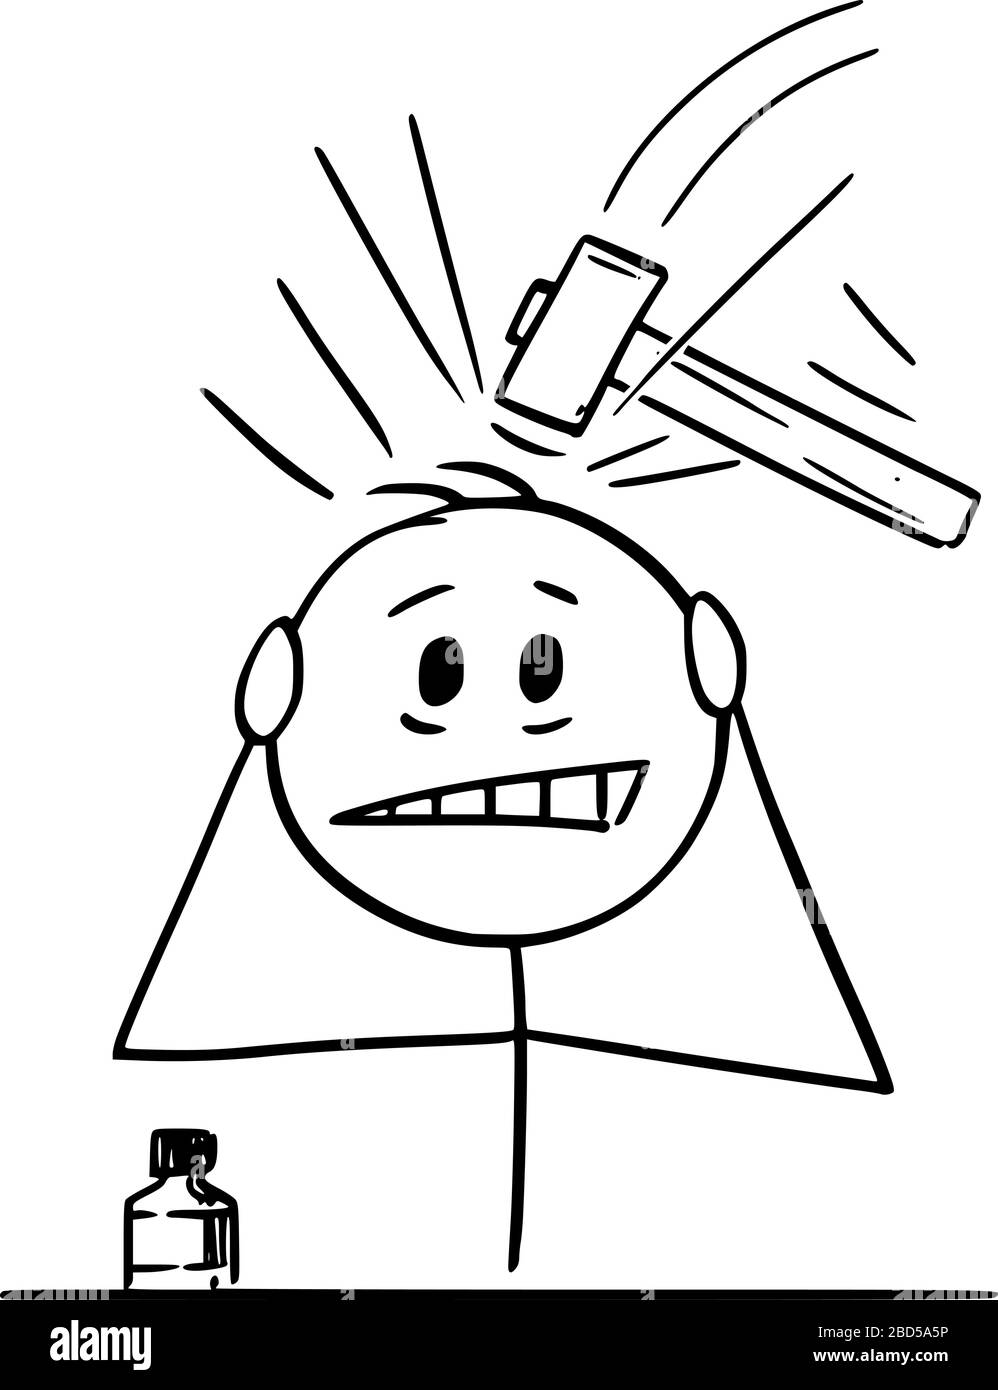 Figura di bastone cartoon vettoriale disegno concettuale dell'uomo che soffre di mal di testa grave o mal di testa o emicrania. Illustrazione Vettoriale